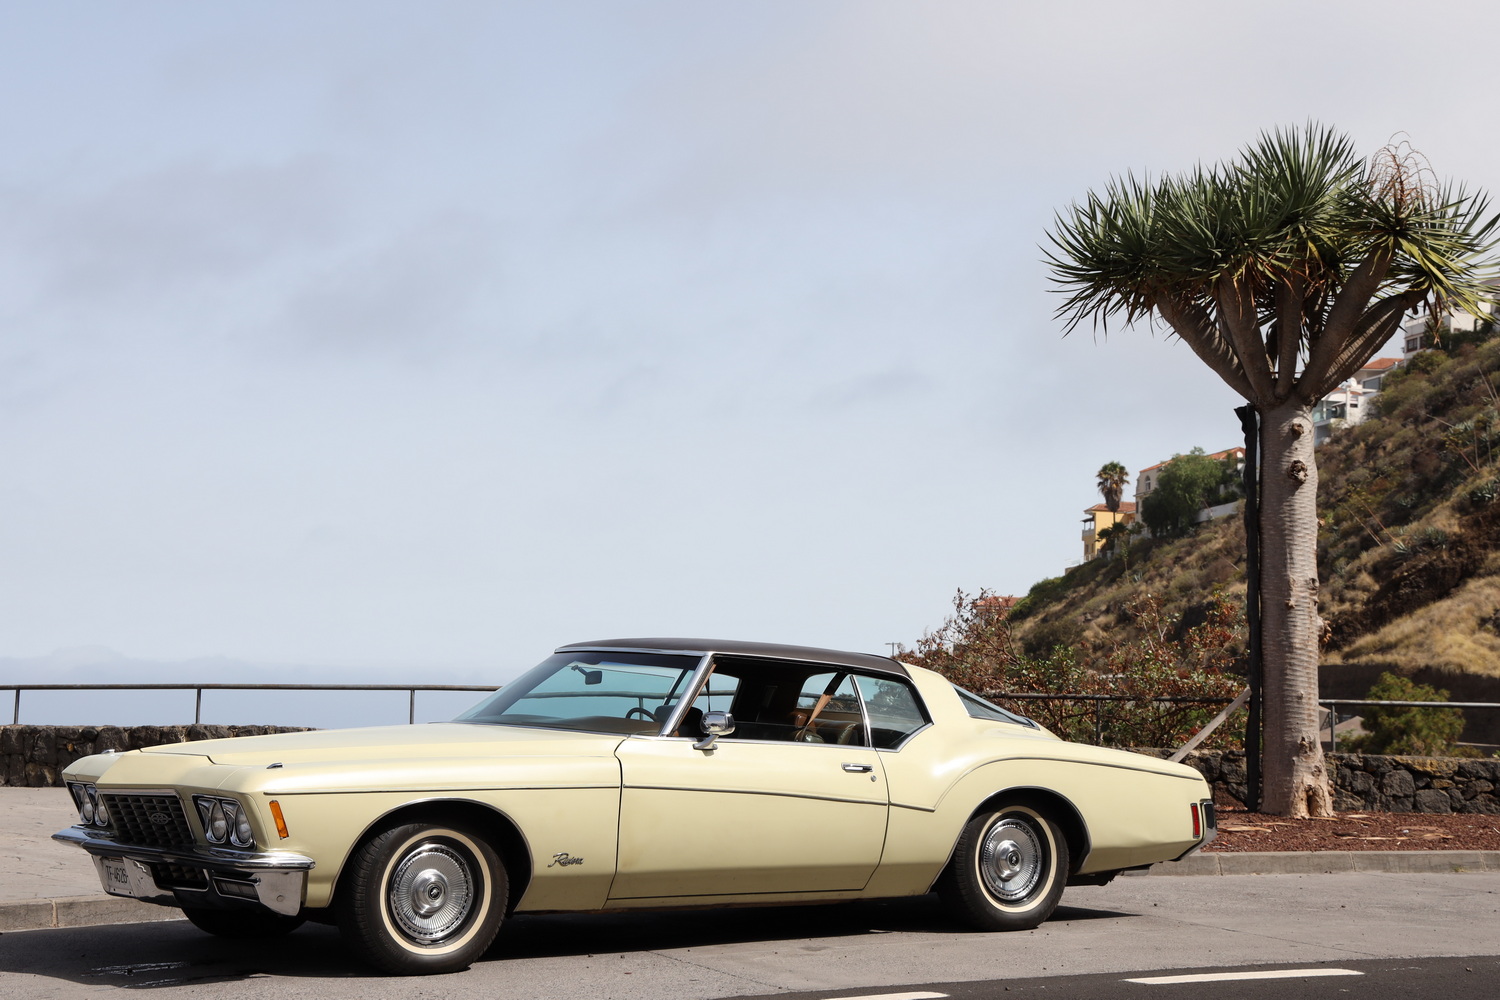 Autoikone der frühen 70er- Buick Riviera- 7,5L-V8-315PS- völlig ungeeignet für Teneriffas Straßen :-)